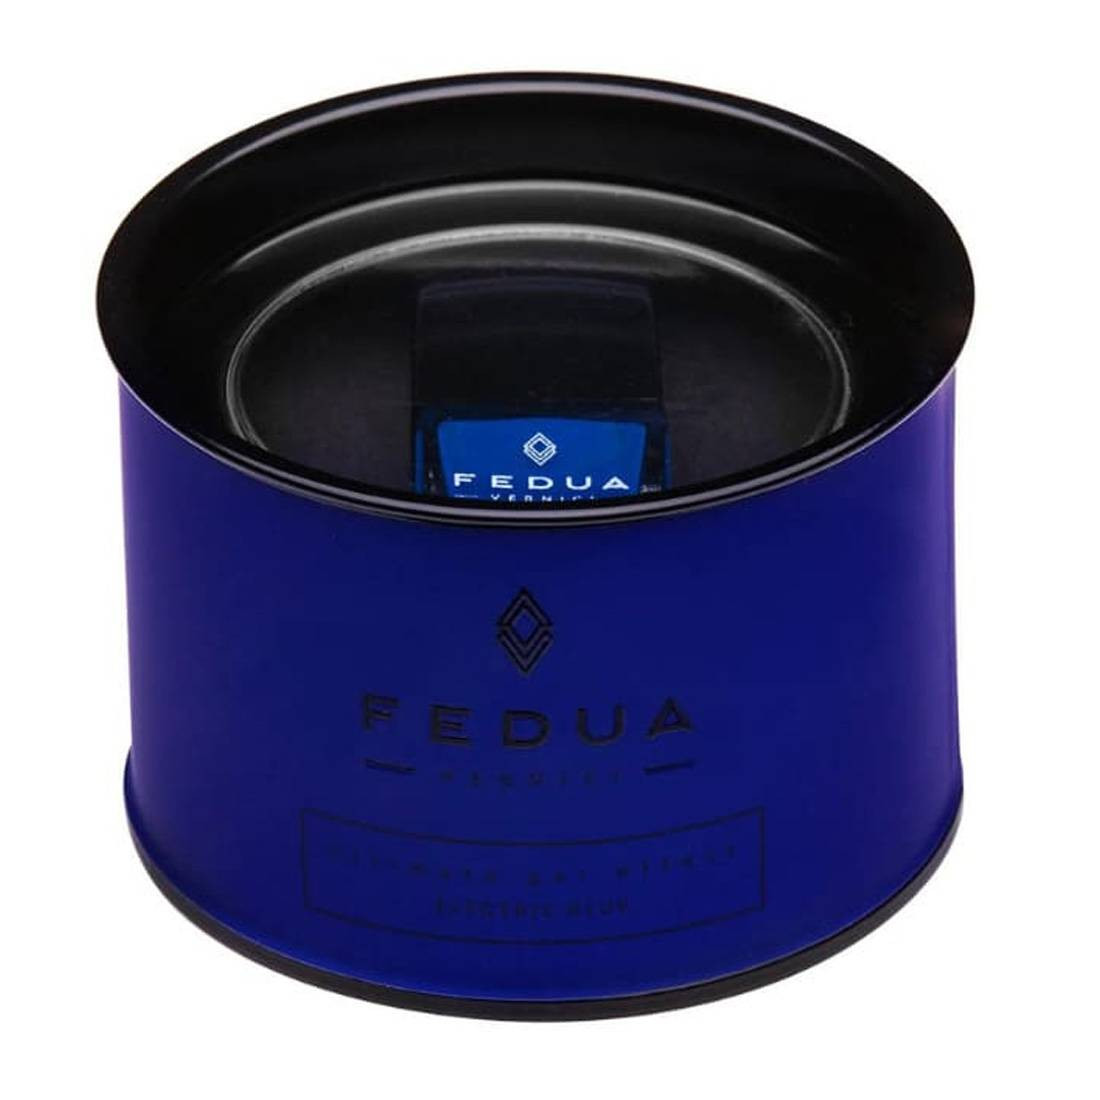 Fedua Vernici Ultimate Collection Electric Blue - Лак для ногтей Синий Электрик